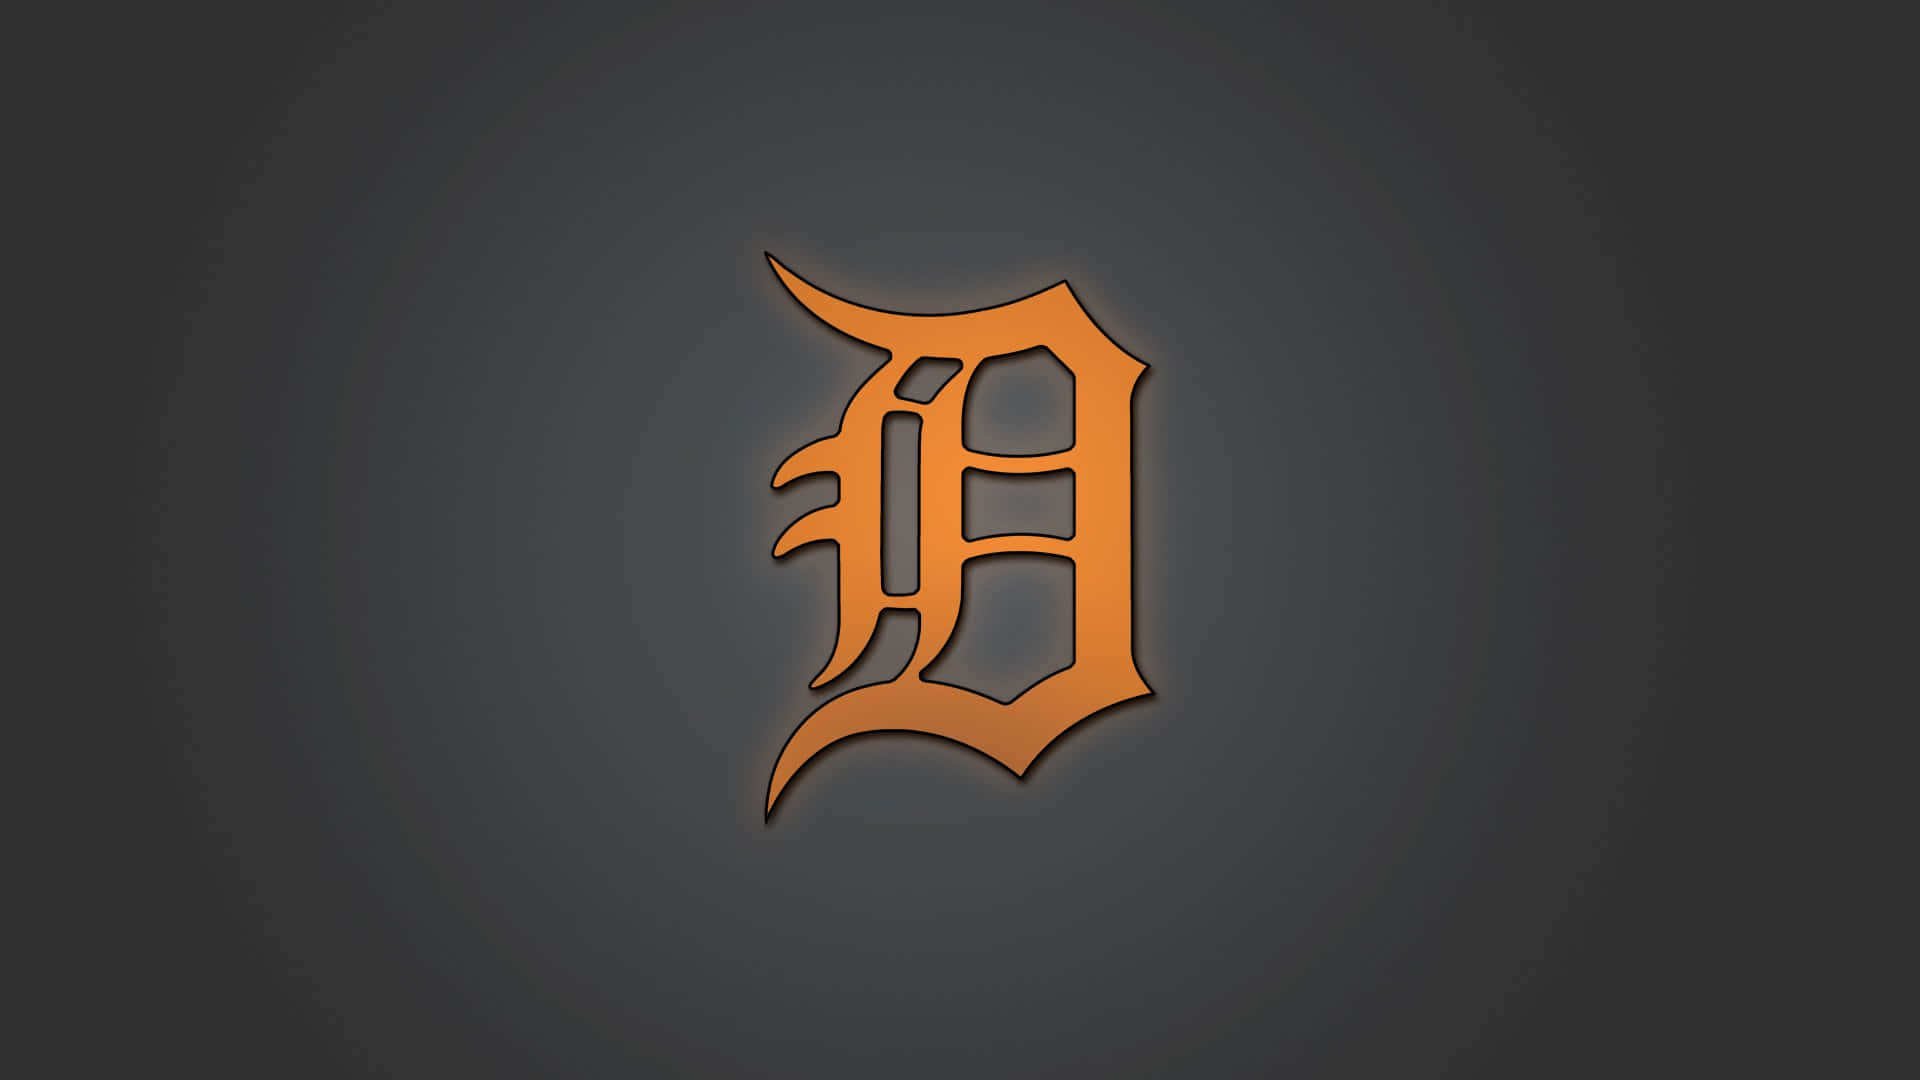 Detroittigers Logo In Orangefarbener Gotischer Schriftart. Wallpaper